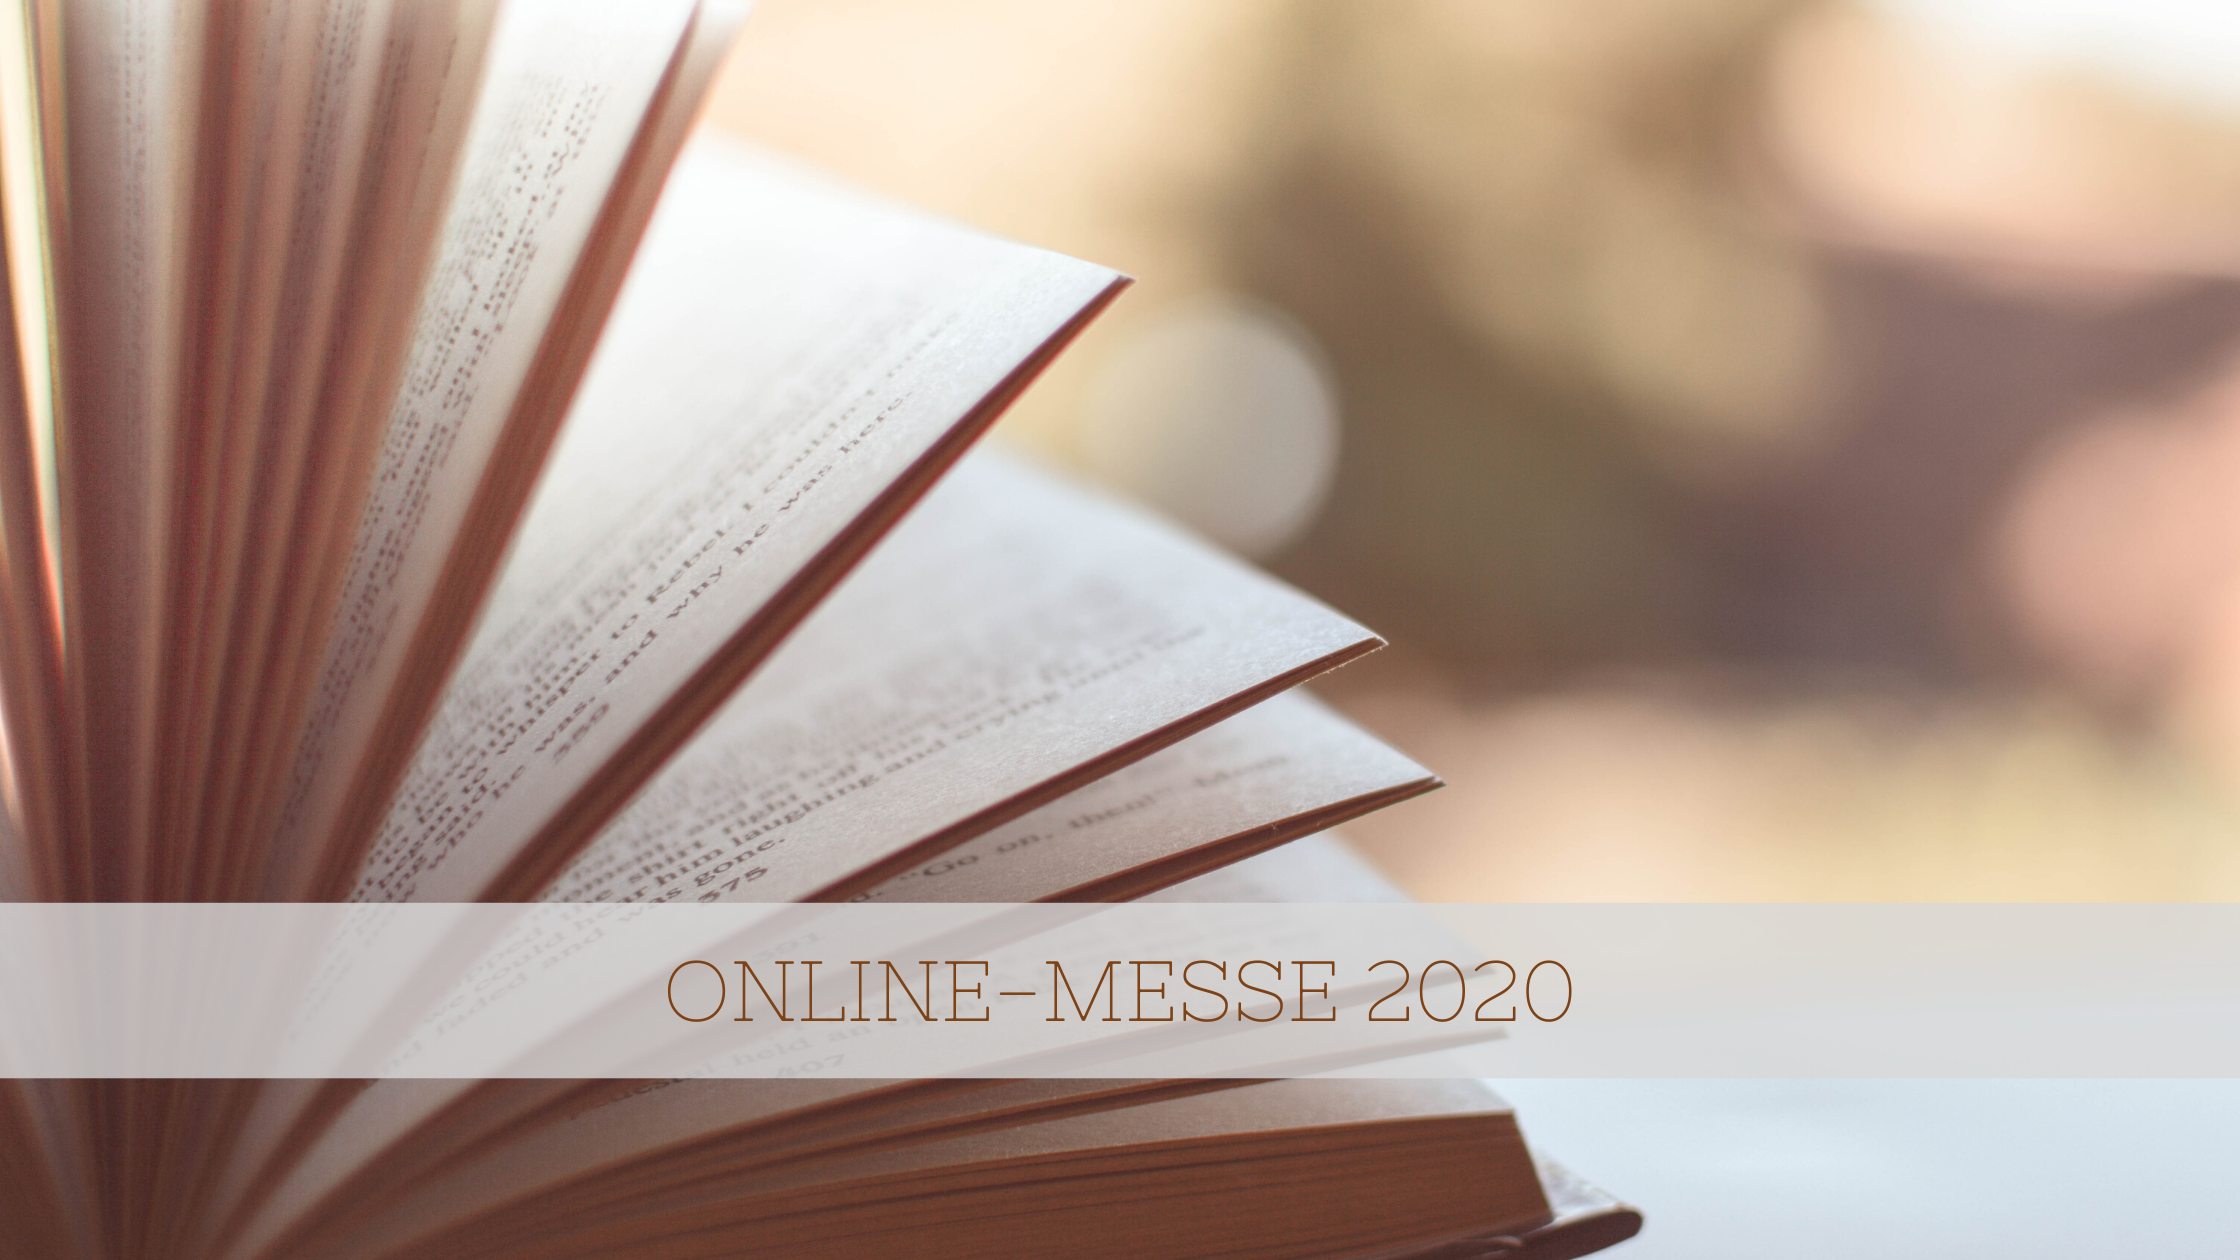 Titelbild "Online-Messen 2020" mit aufgeschlagenem Buch